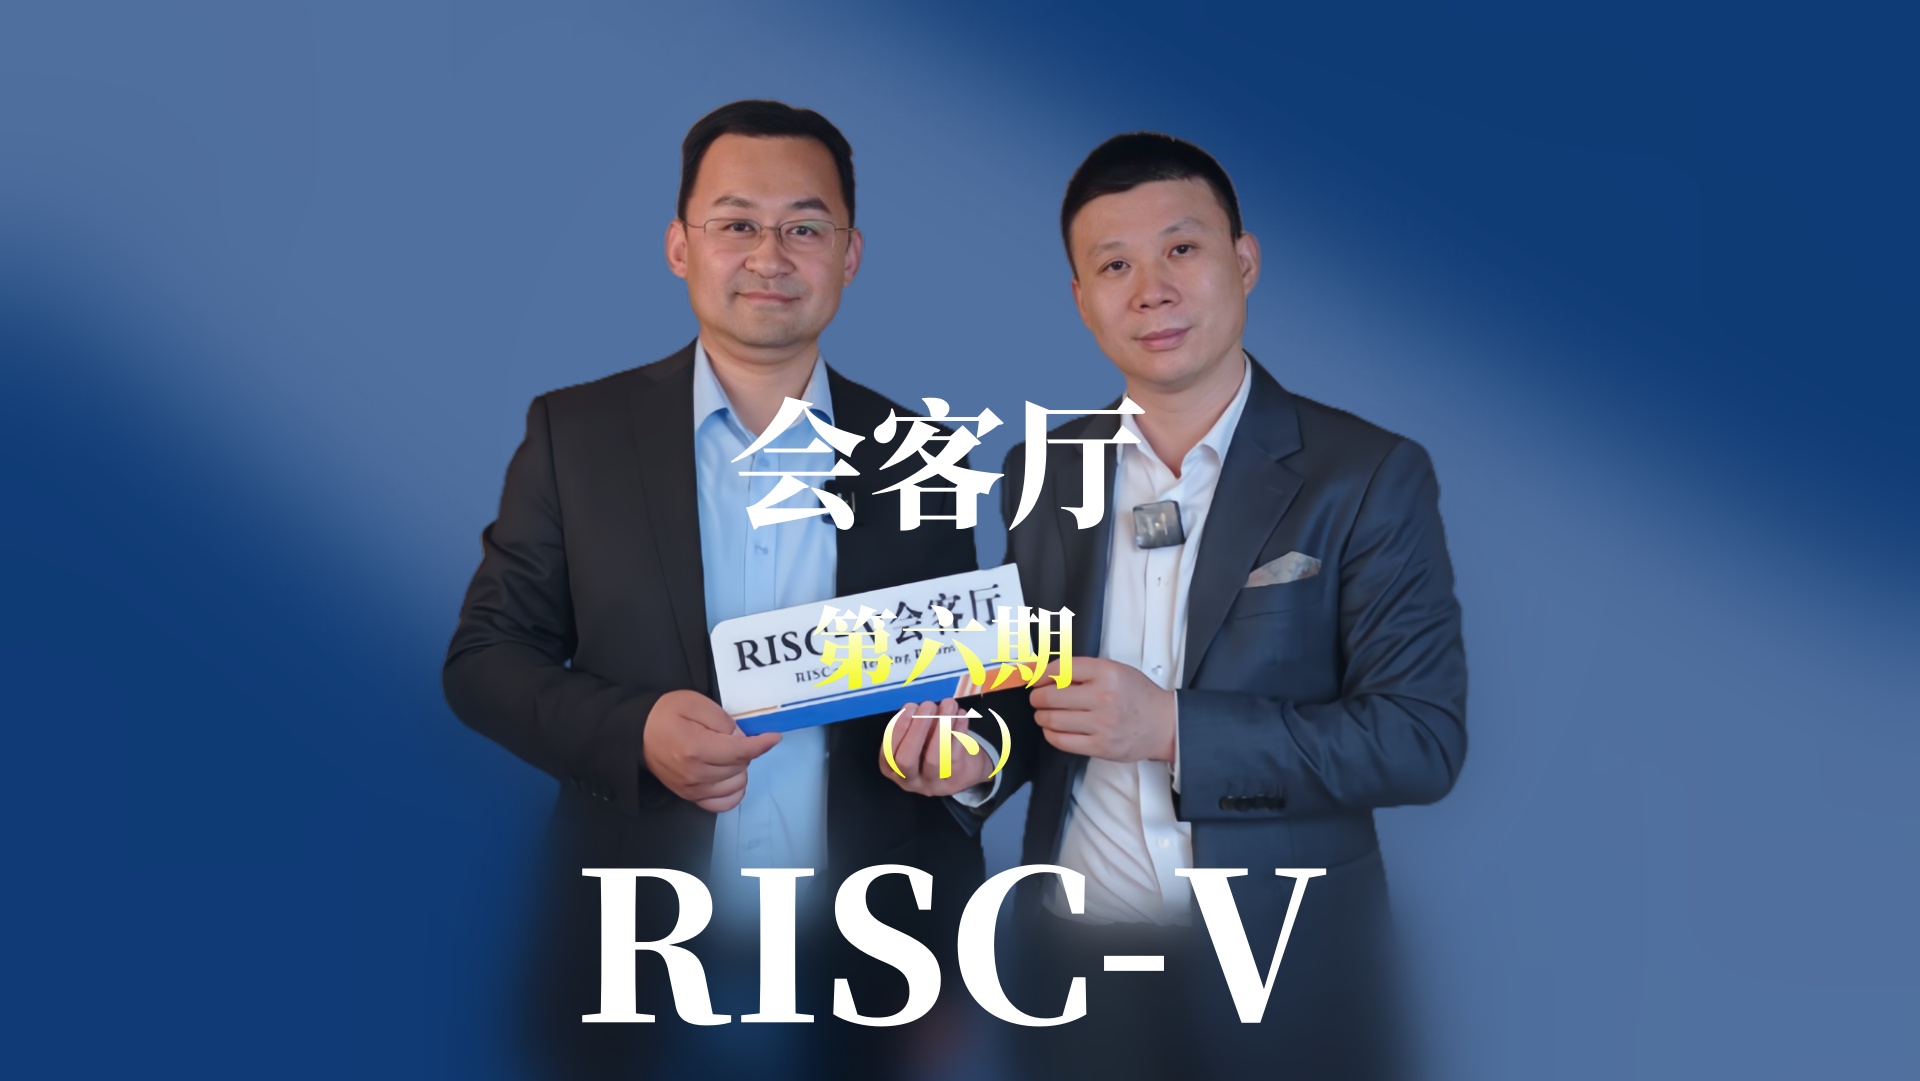 【第六期下】邀請江蘇潤開鴻的副總裁于大伍共同探索OpenHarmony 與#RISCV 融合發展的趨勢與未來